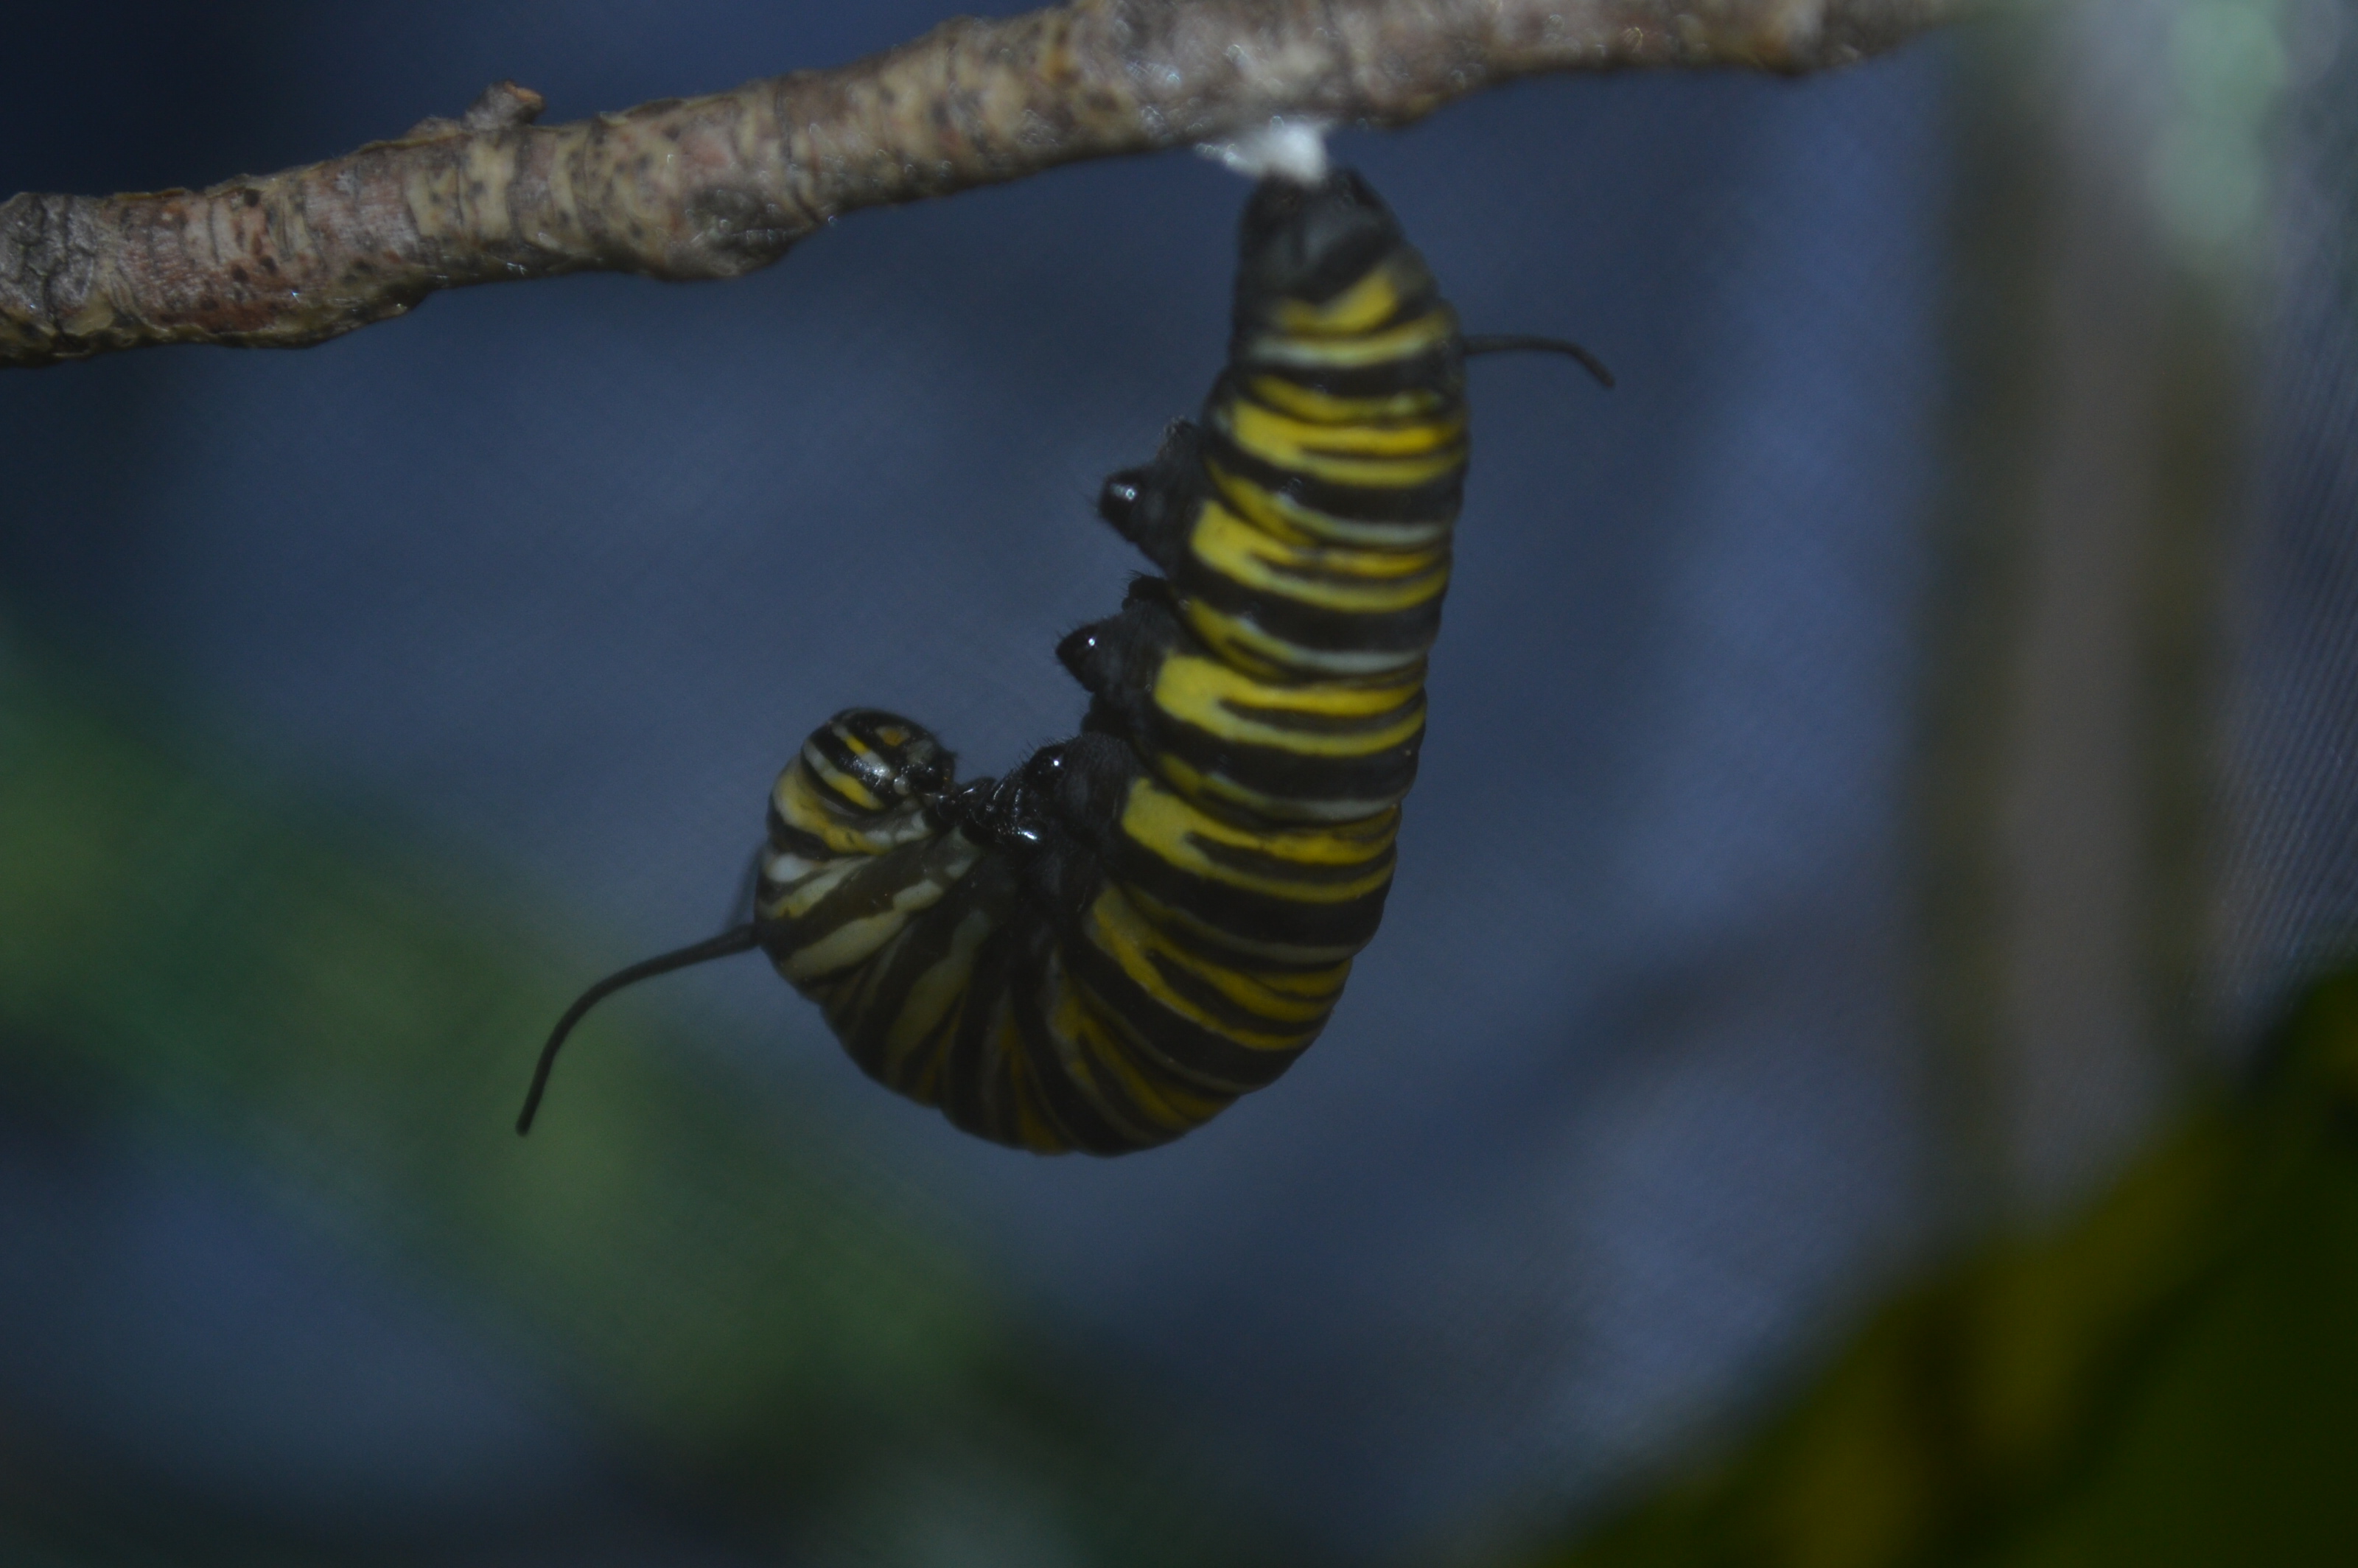 Lisa Flanagan's caterpillar